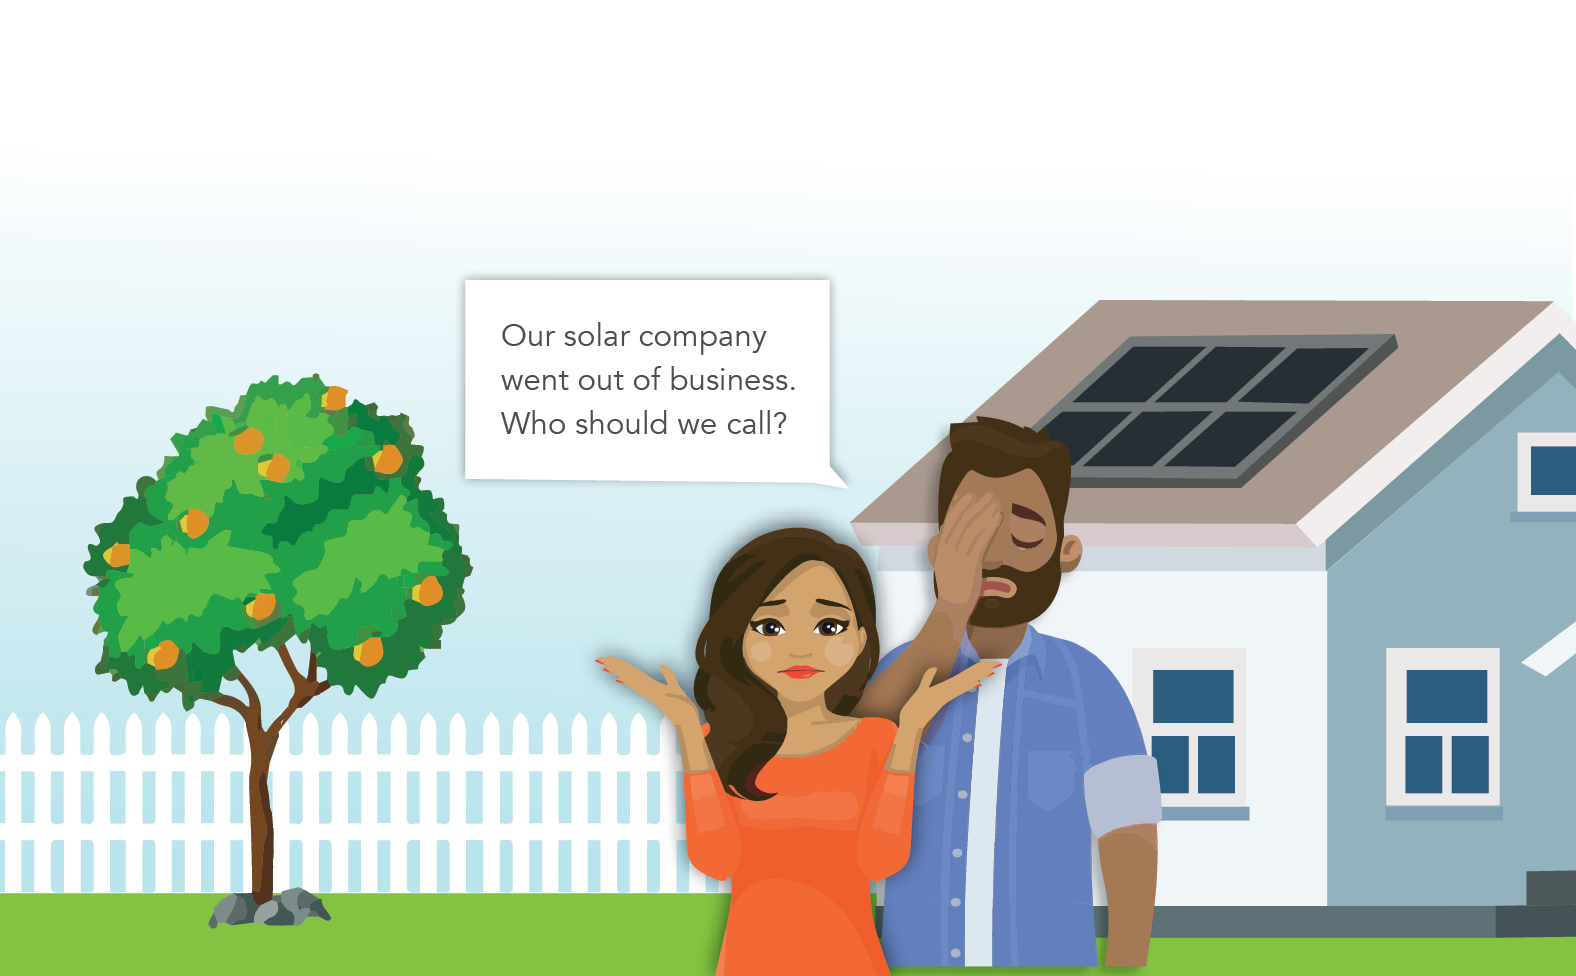 Customers need new solar installation company